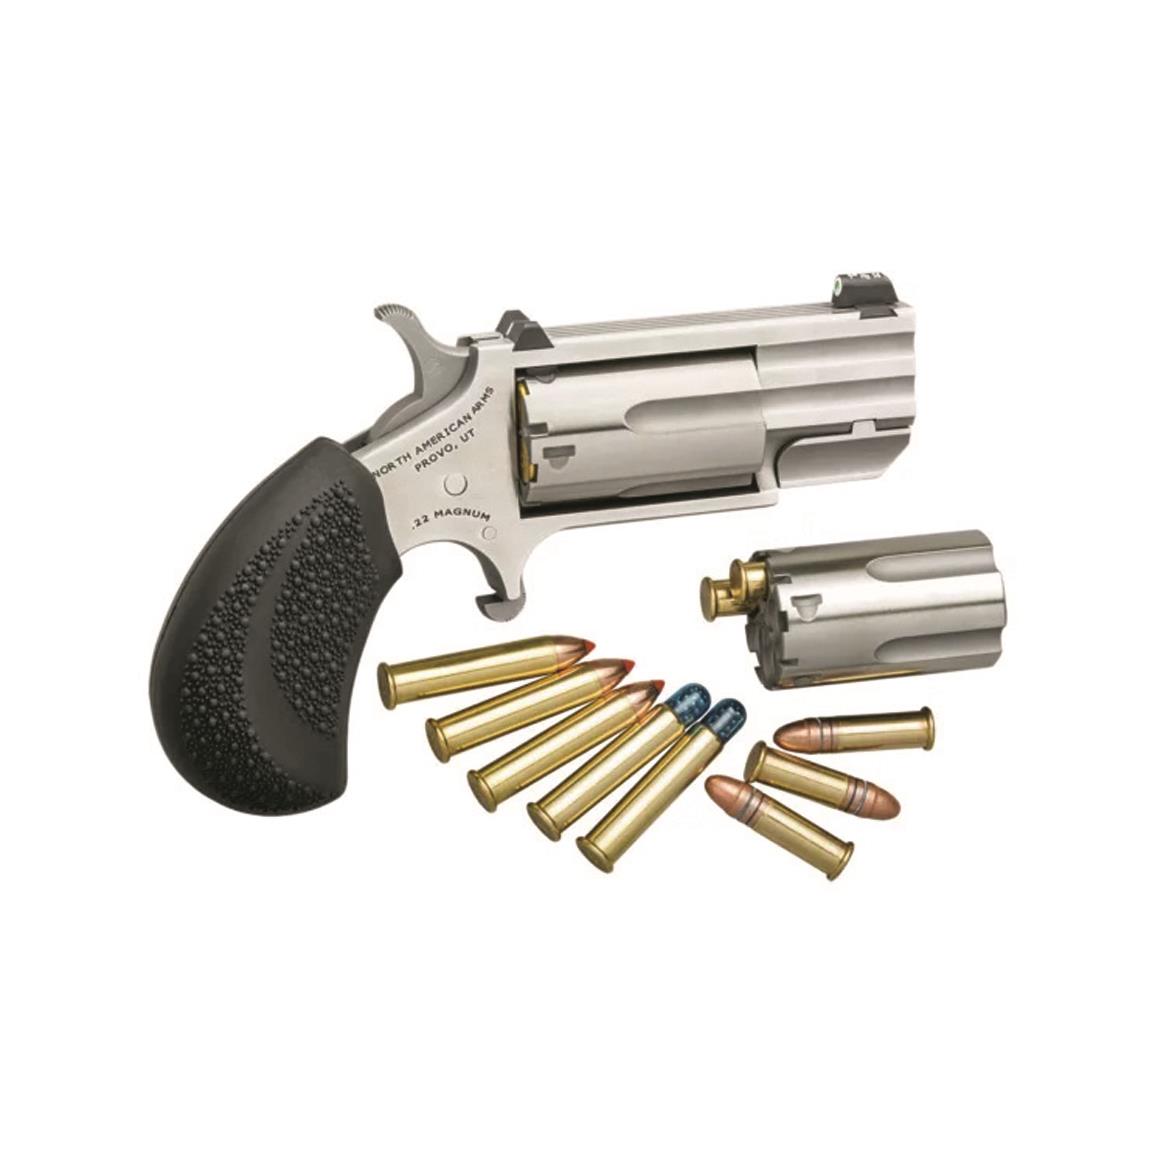 NAA .22 Magnum Pug, Revolver, .22 Magnum/.22LR, 1" Barrel, XS Tritium Front Sight, 5 Rounds